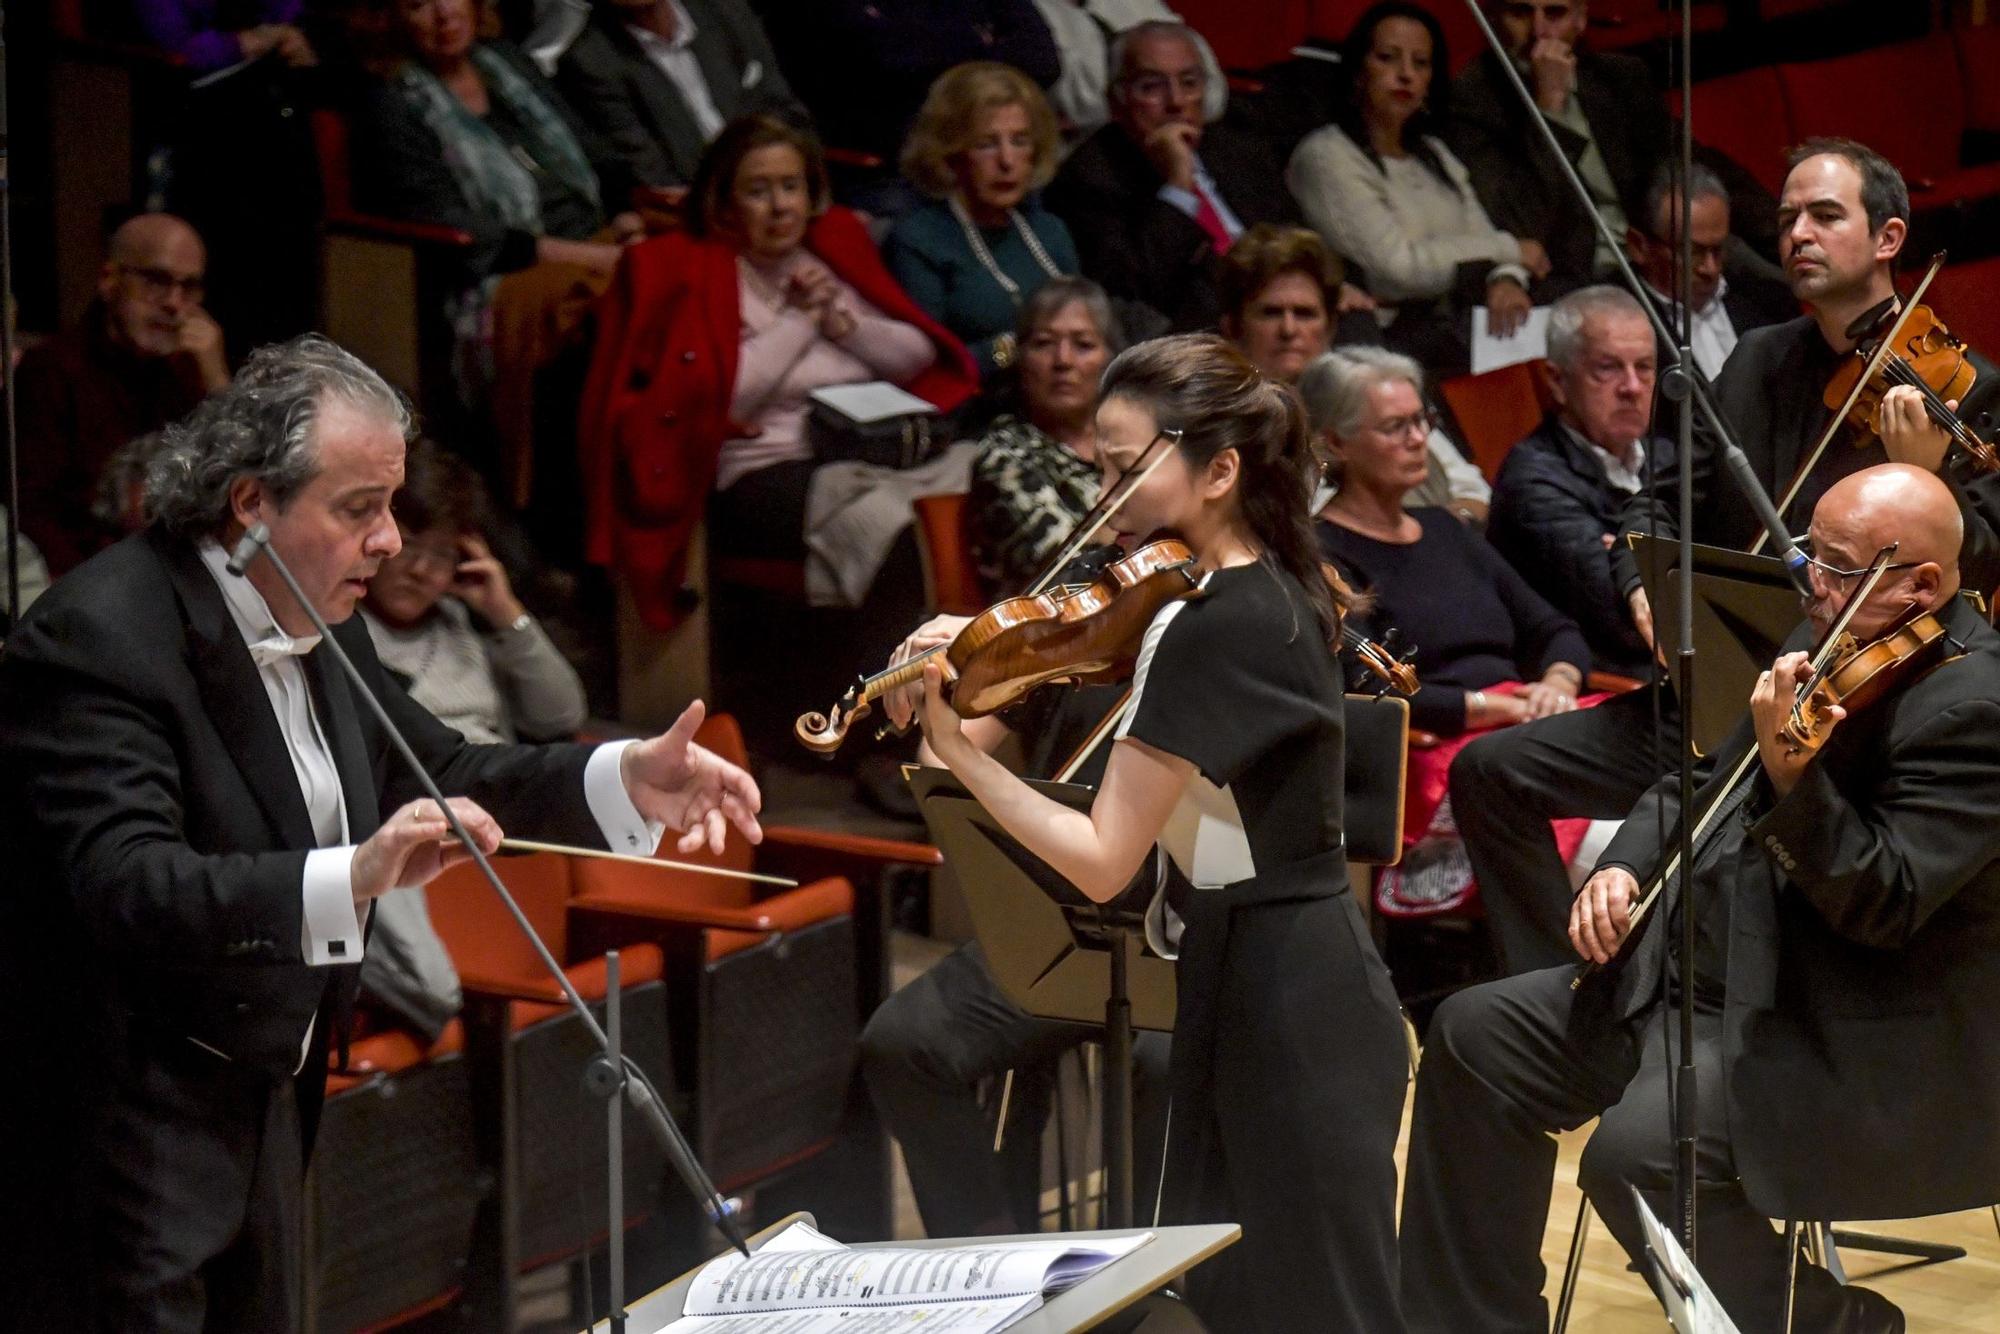 Inauguración del Festival de Música de Canarias: concierto de la BBC Philarmonic